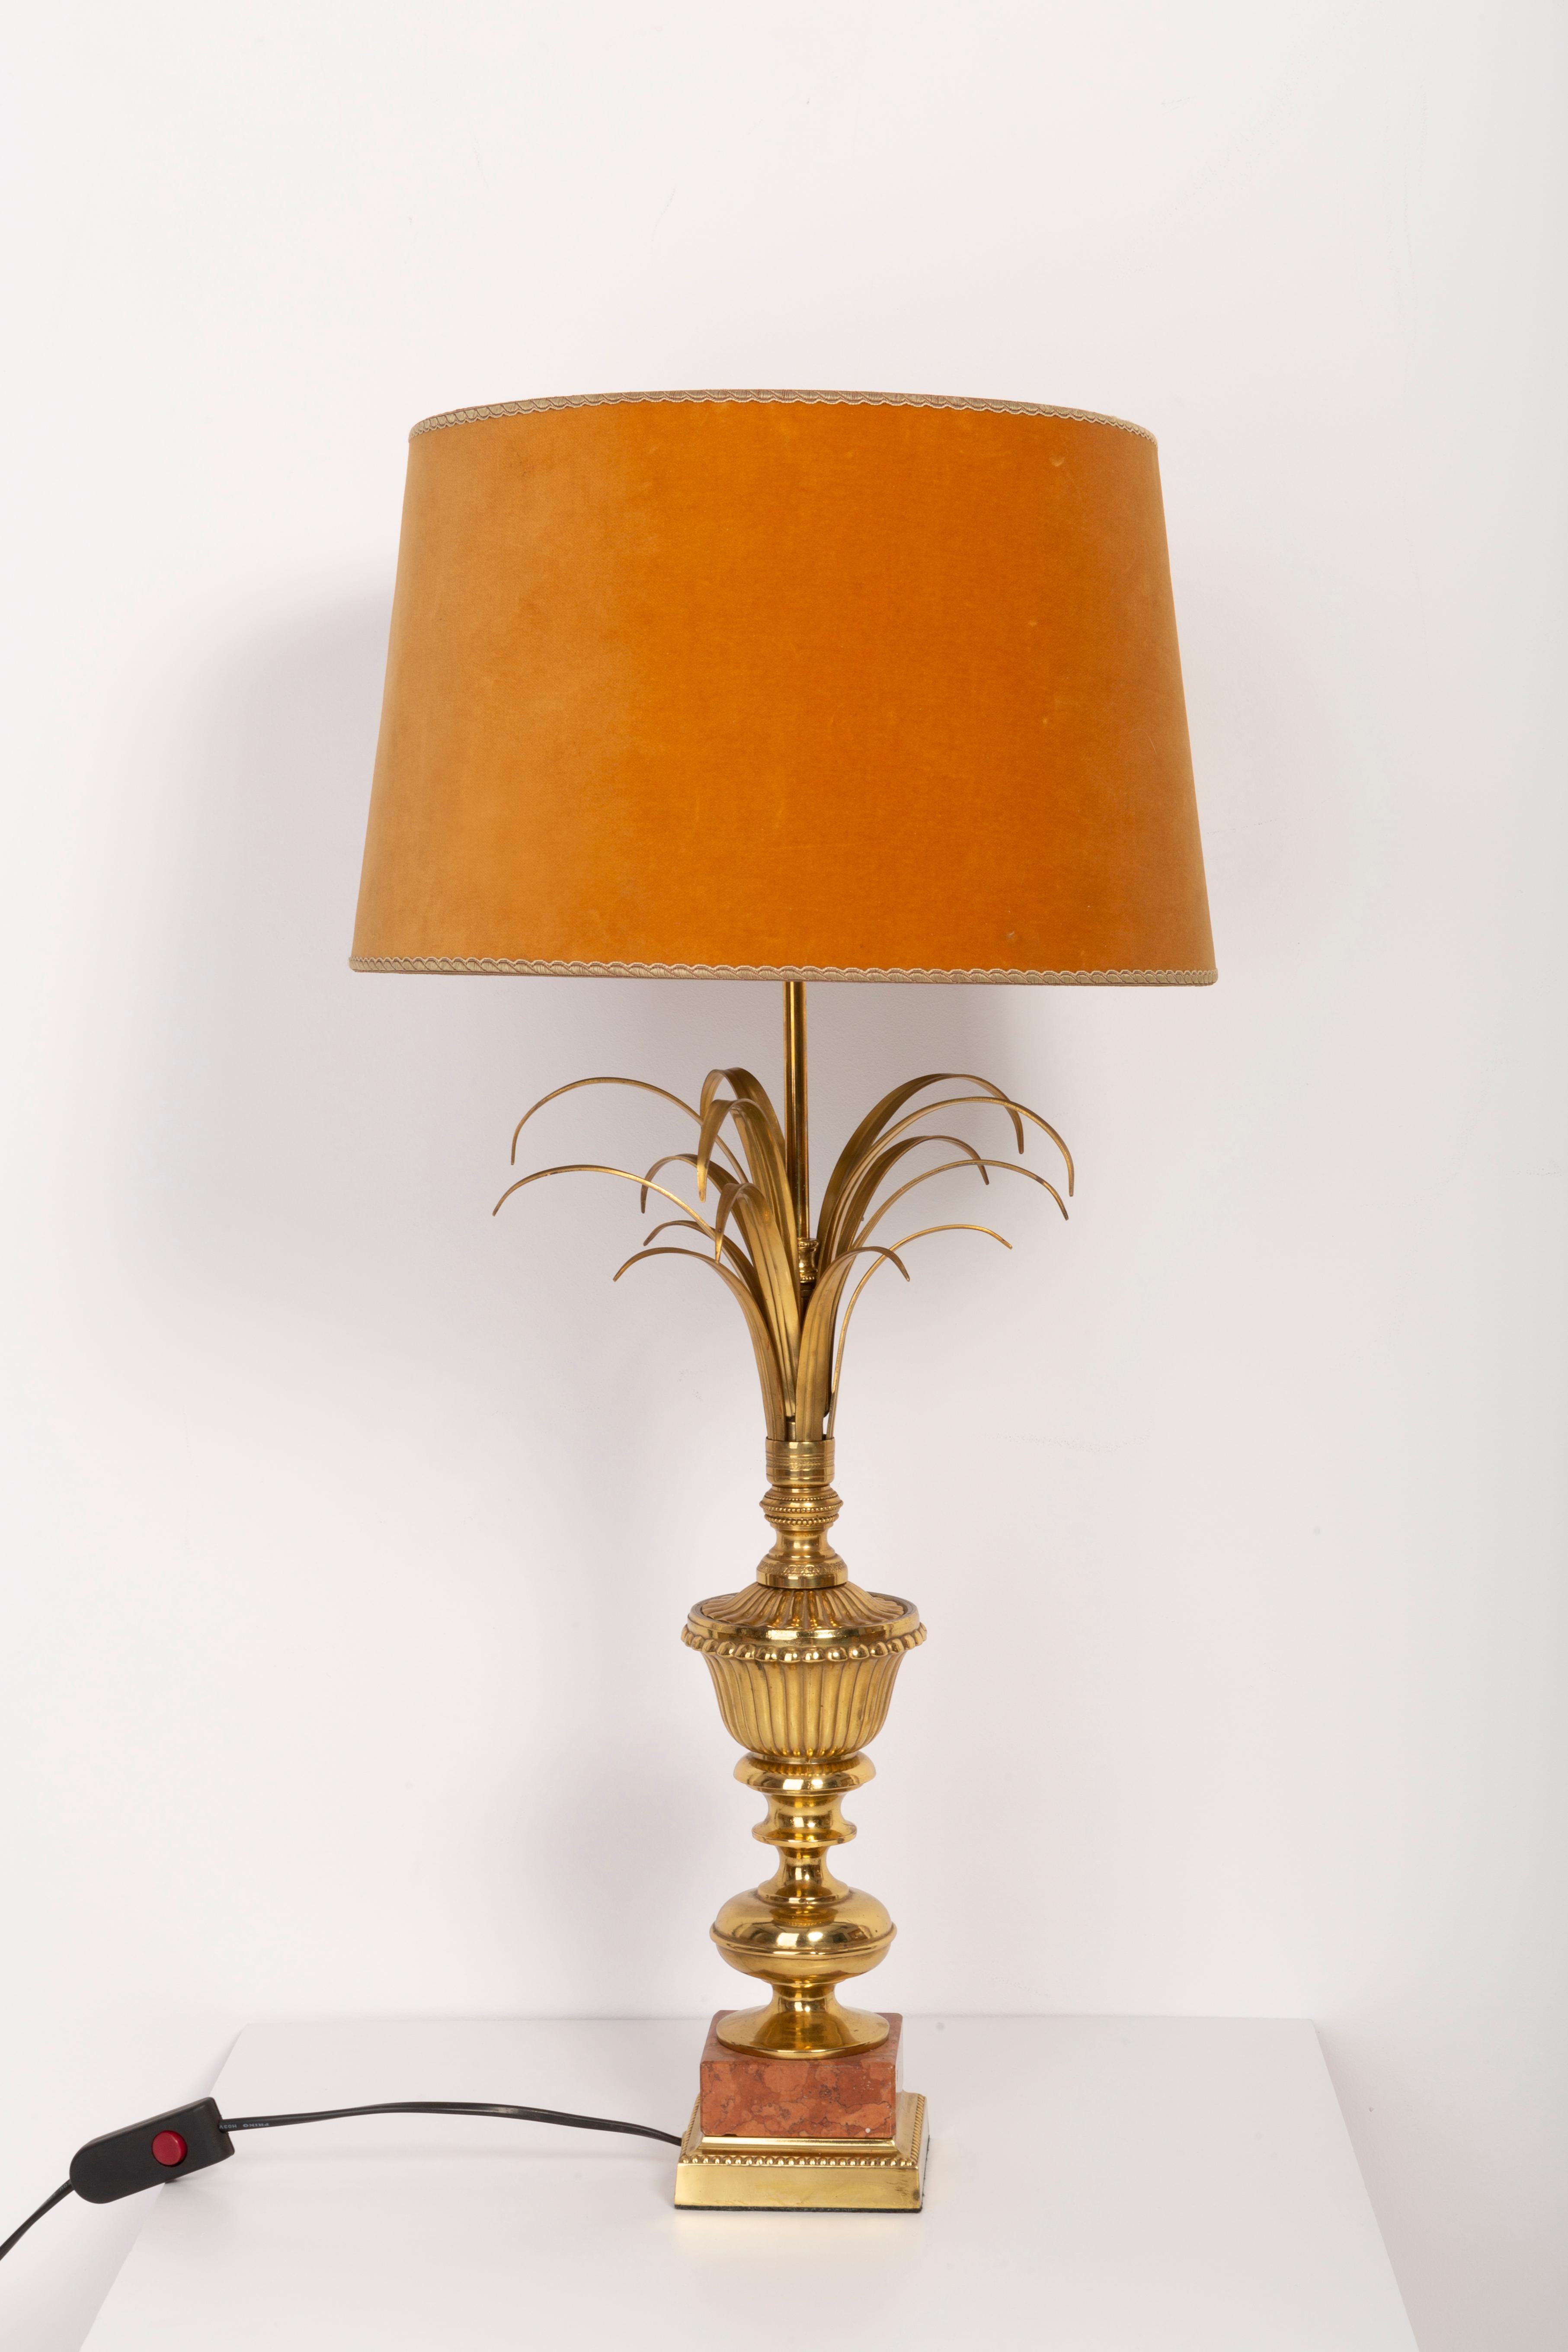 Lampe de table du milieu du siècle dernier, conçue en France dans les années 1960. Éléments dorés, velours orange sur le dessus... Très bon état d'origine vintage. Ampoules standard. Une seule pièce unique.